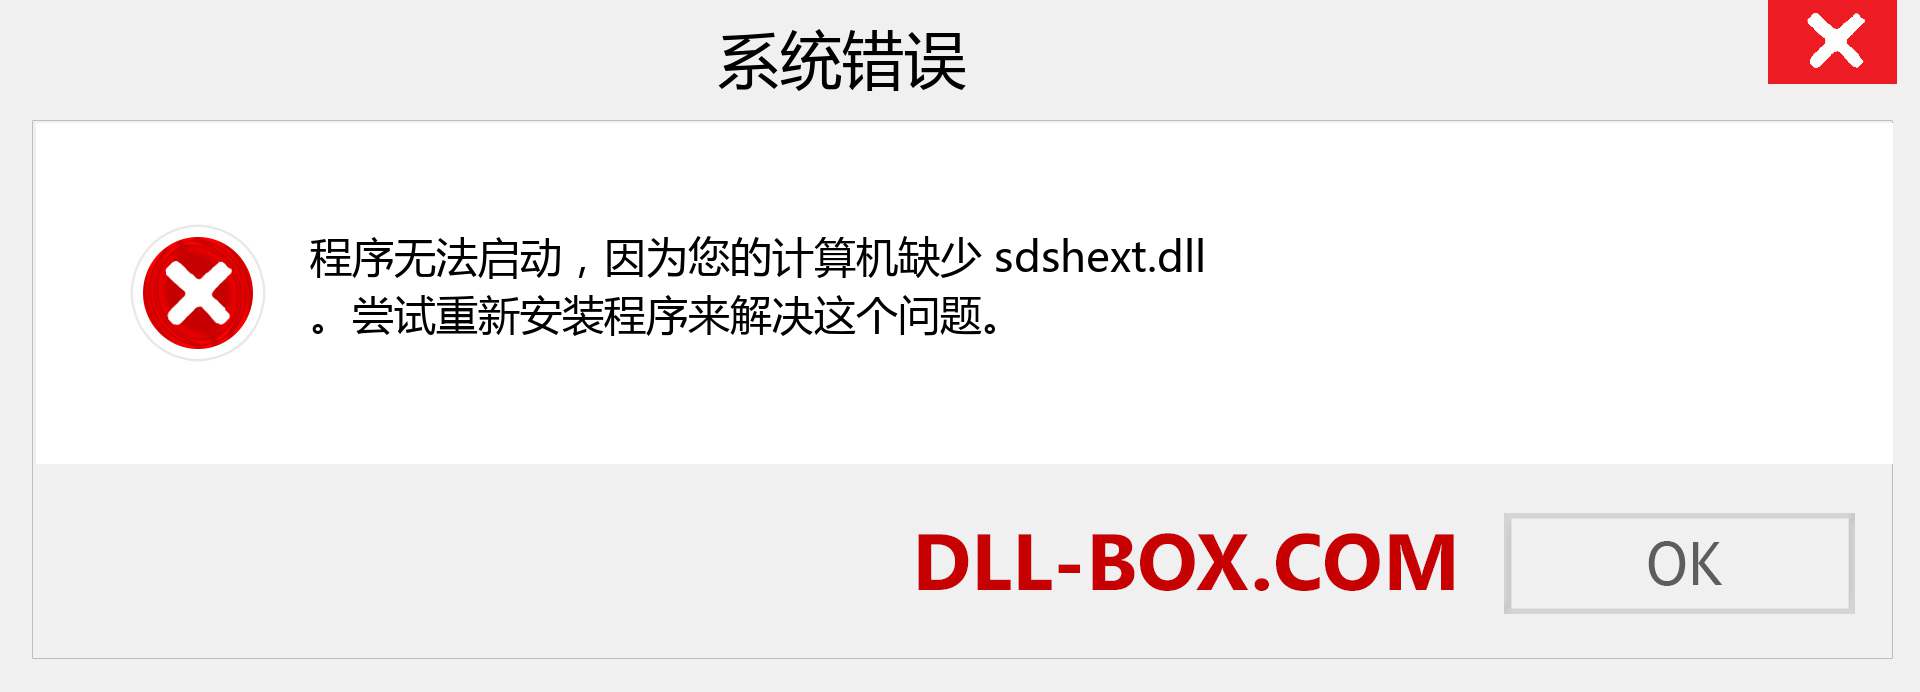 sdshext.dll 文件丢失？。 适用于 Windows 7、8、10 的下载 - 修复 Windows、照片、图像上的 sdshext dll 丢失错误